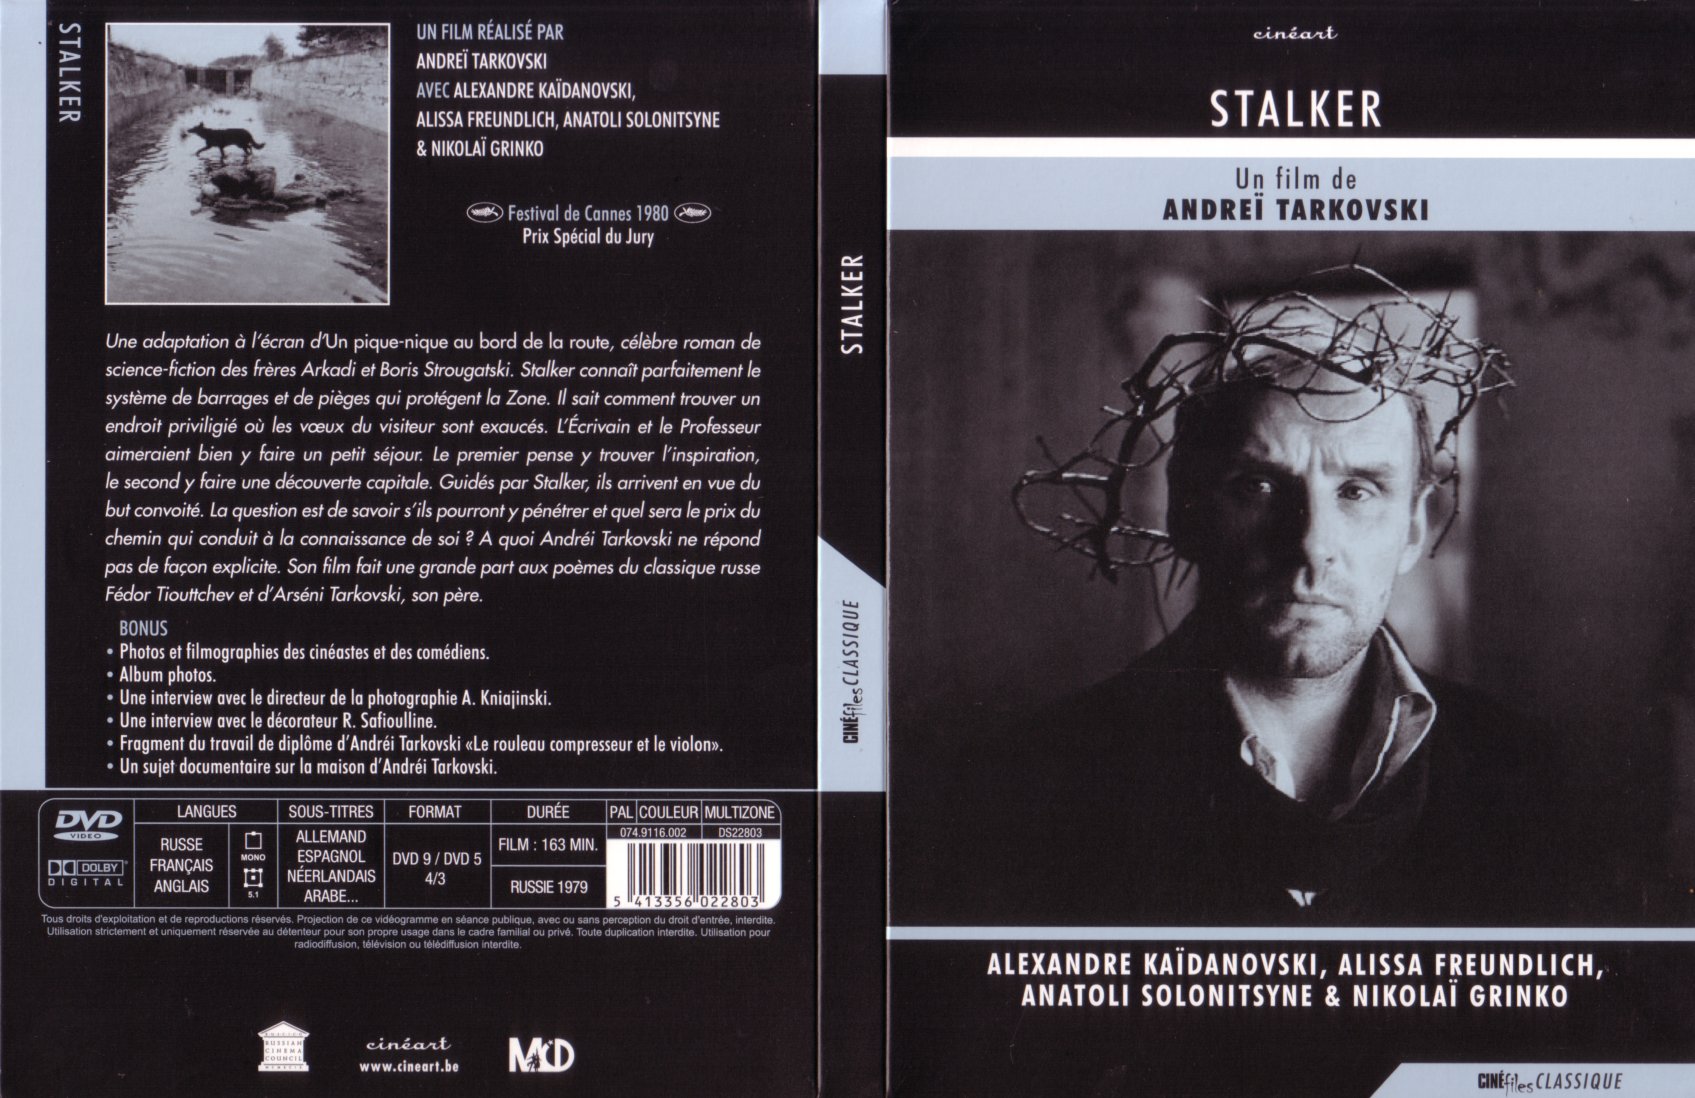 Jaquette DVD Stalker v2